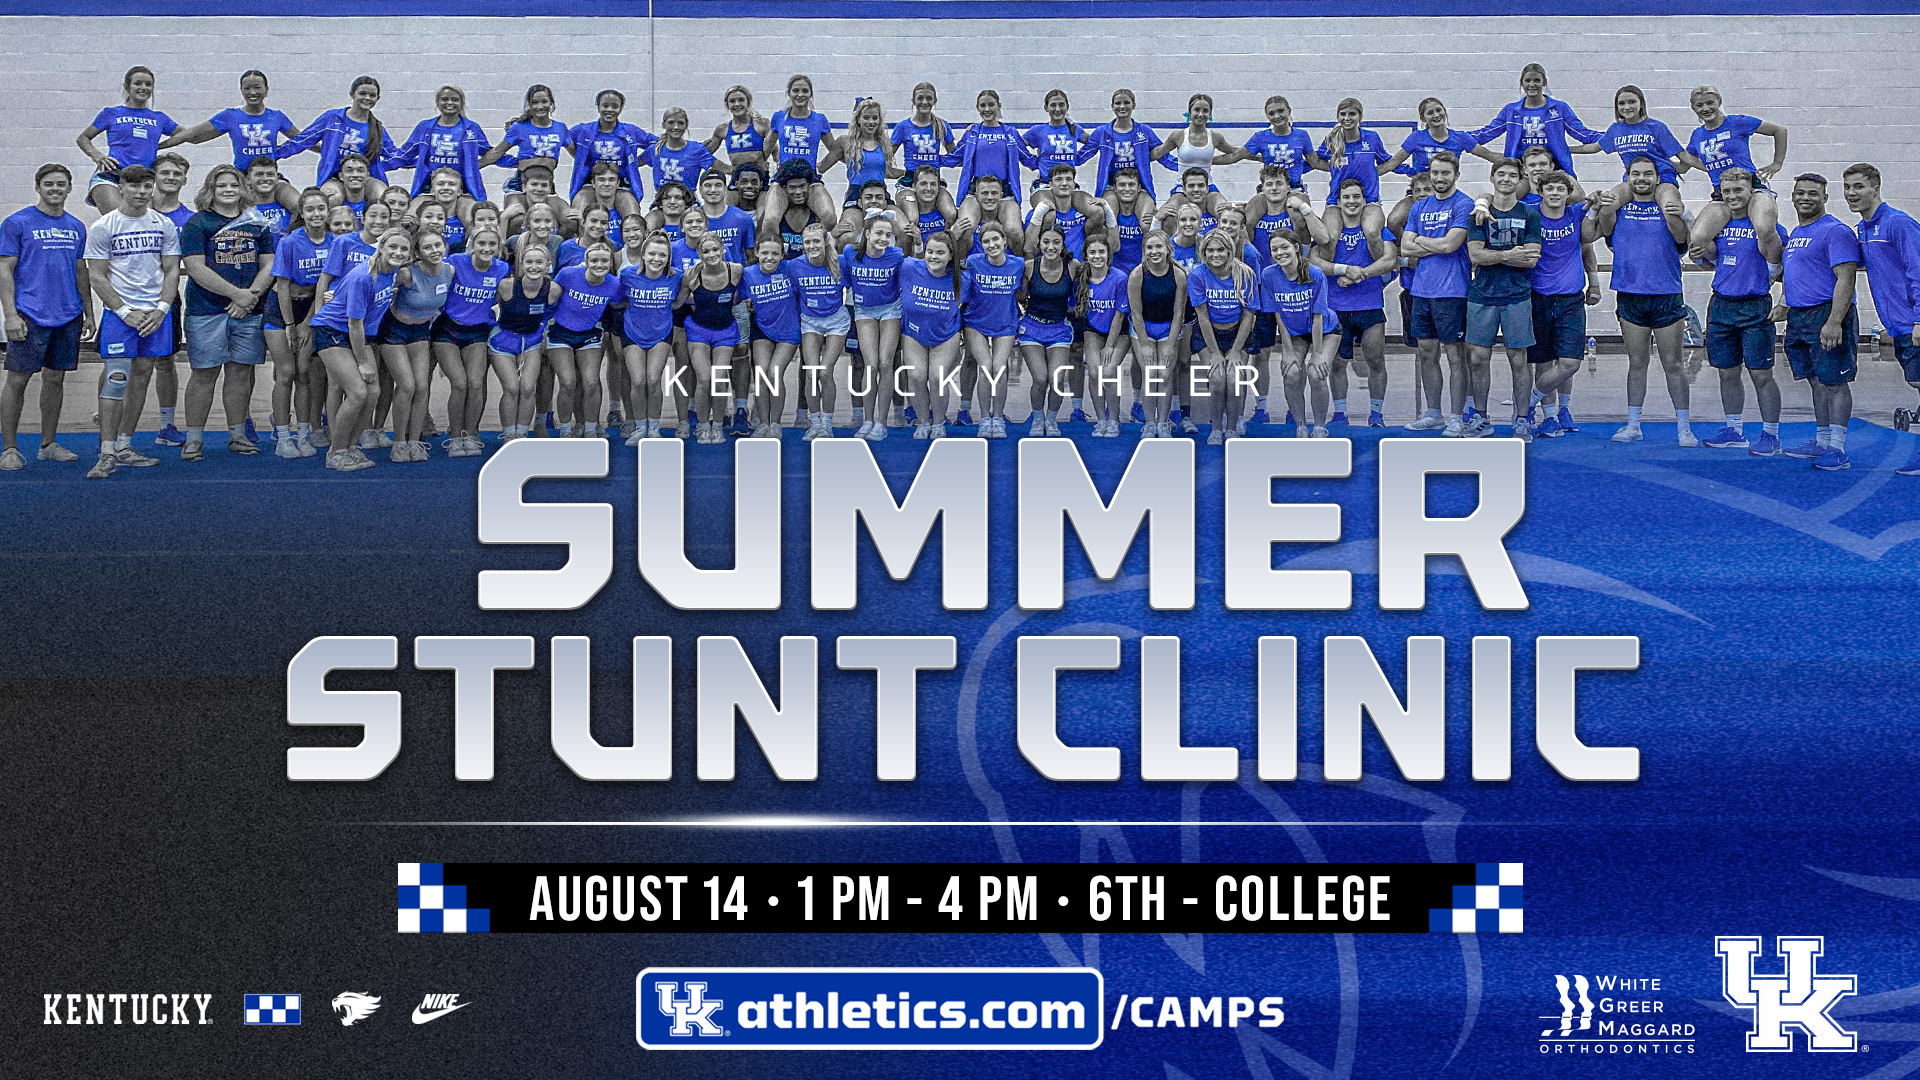 Kentucky Cheer Summer Recruitment Clinic